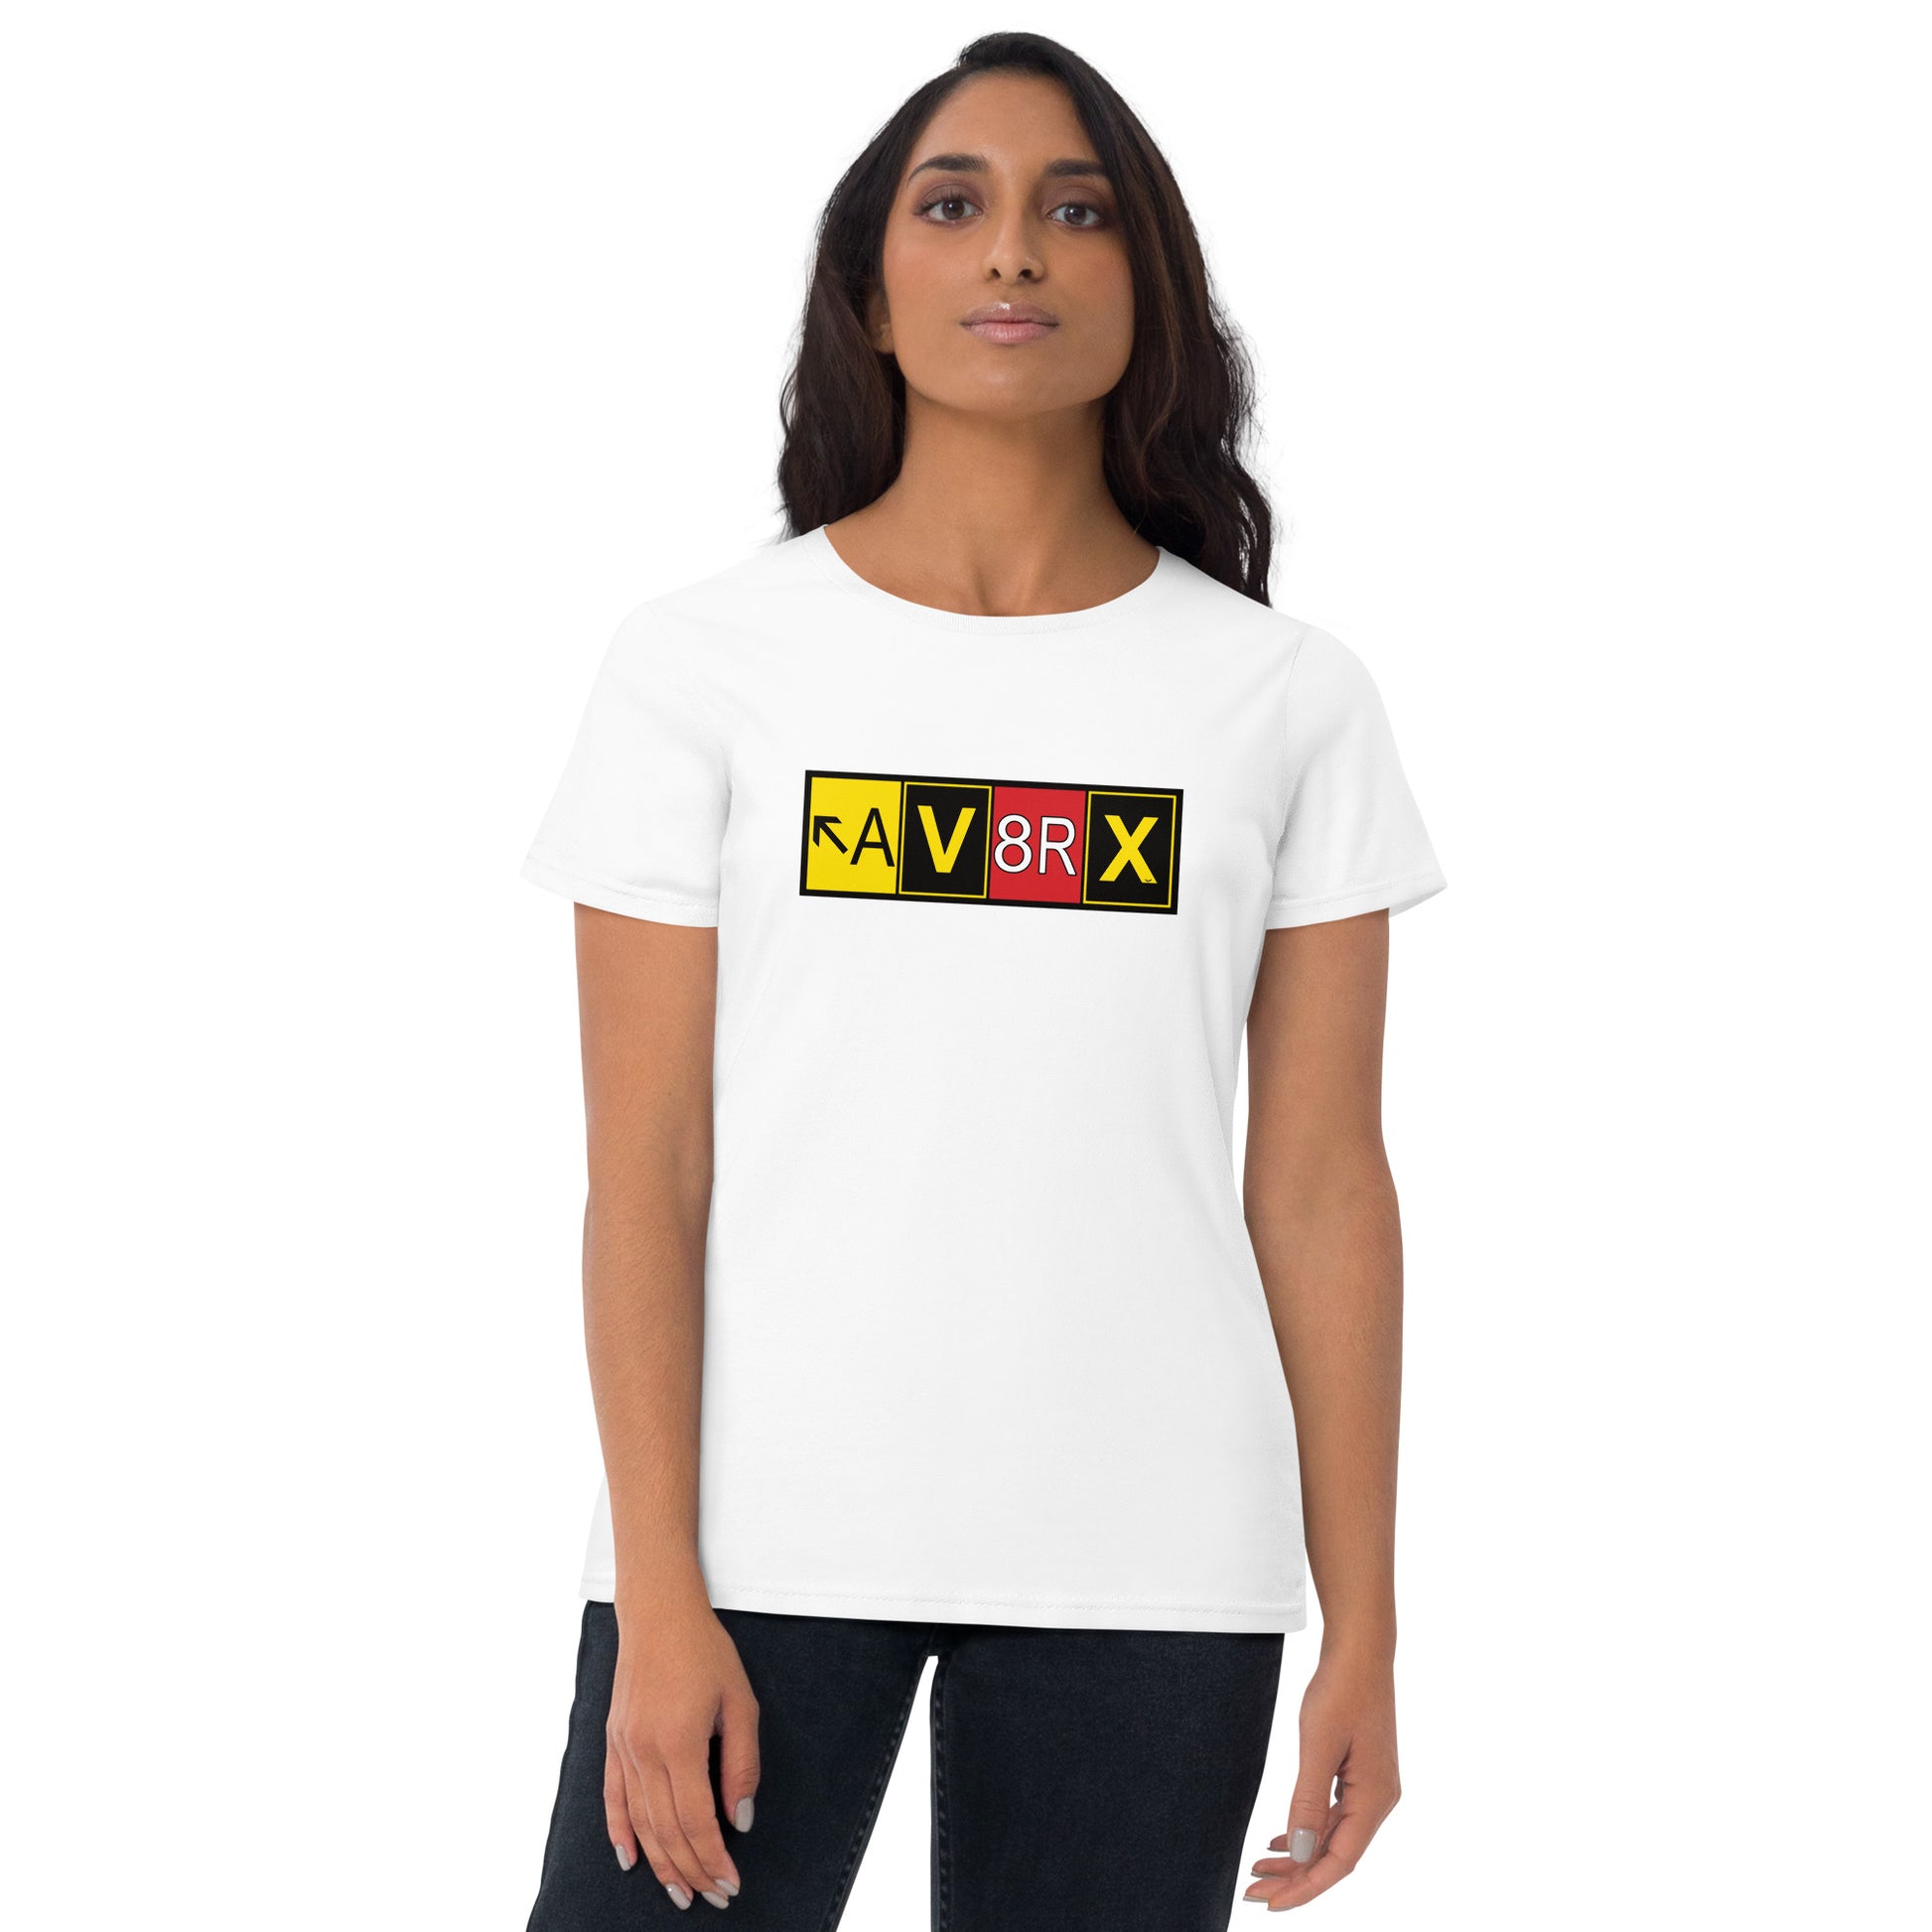 Aviatrix women's short sleeve t-shirt